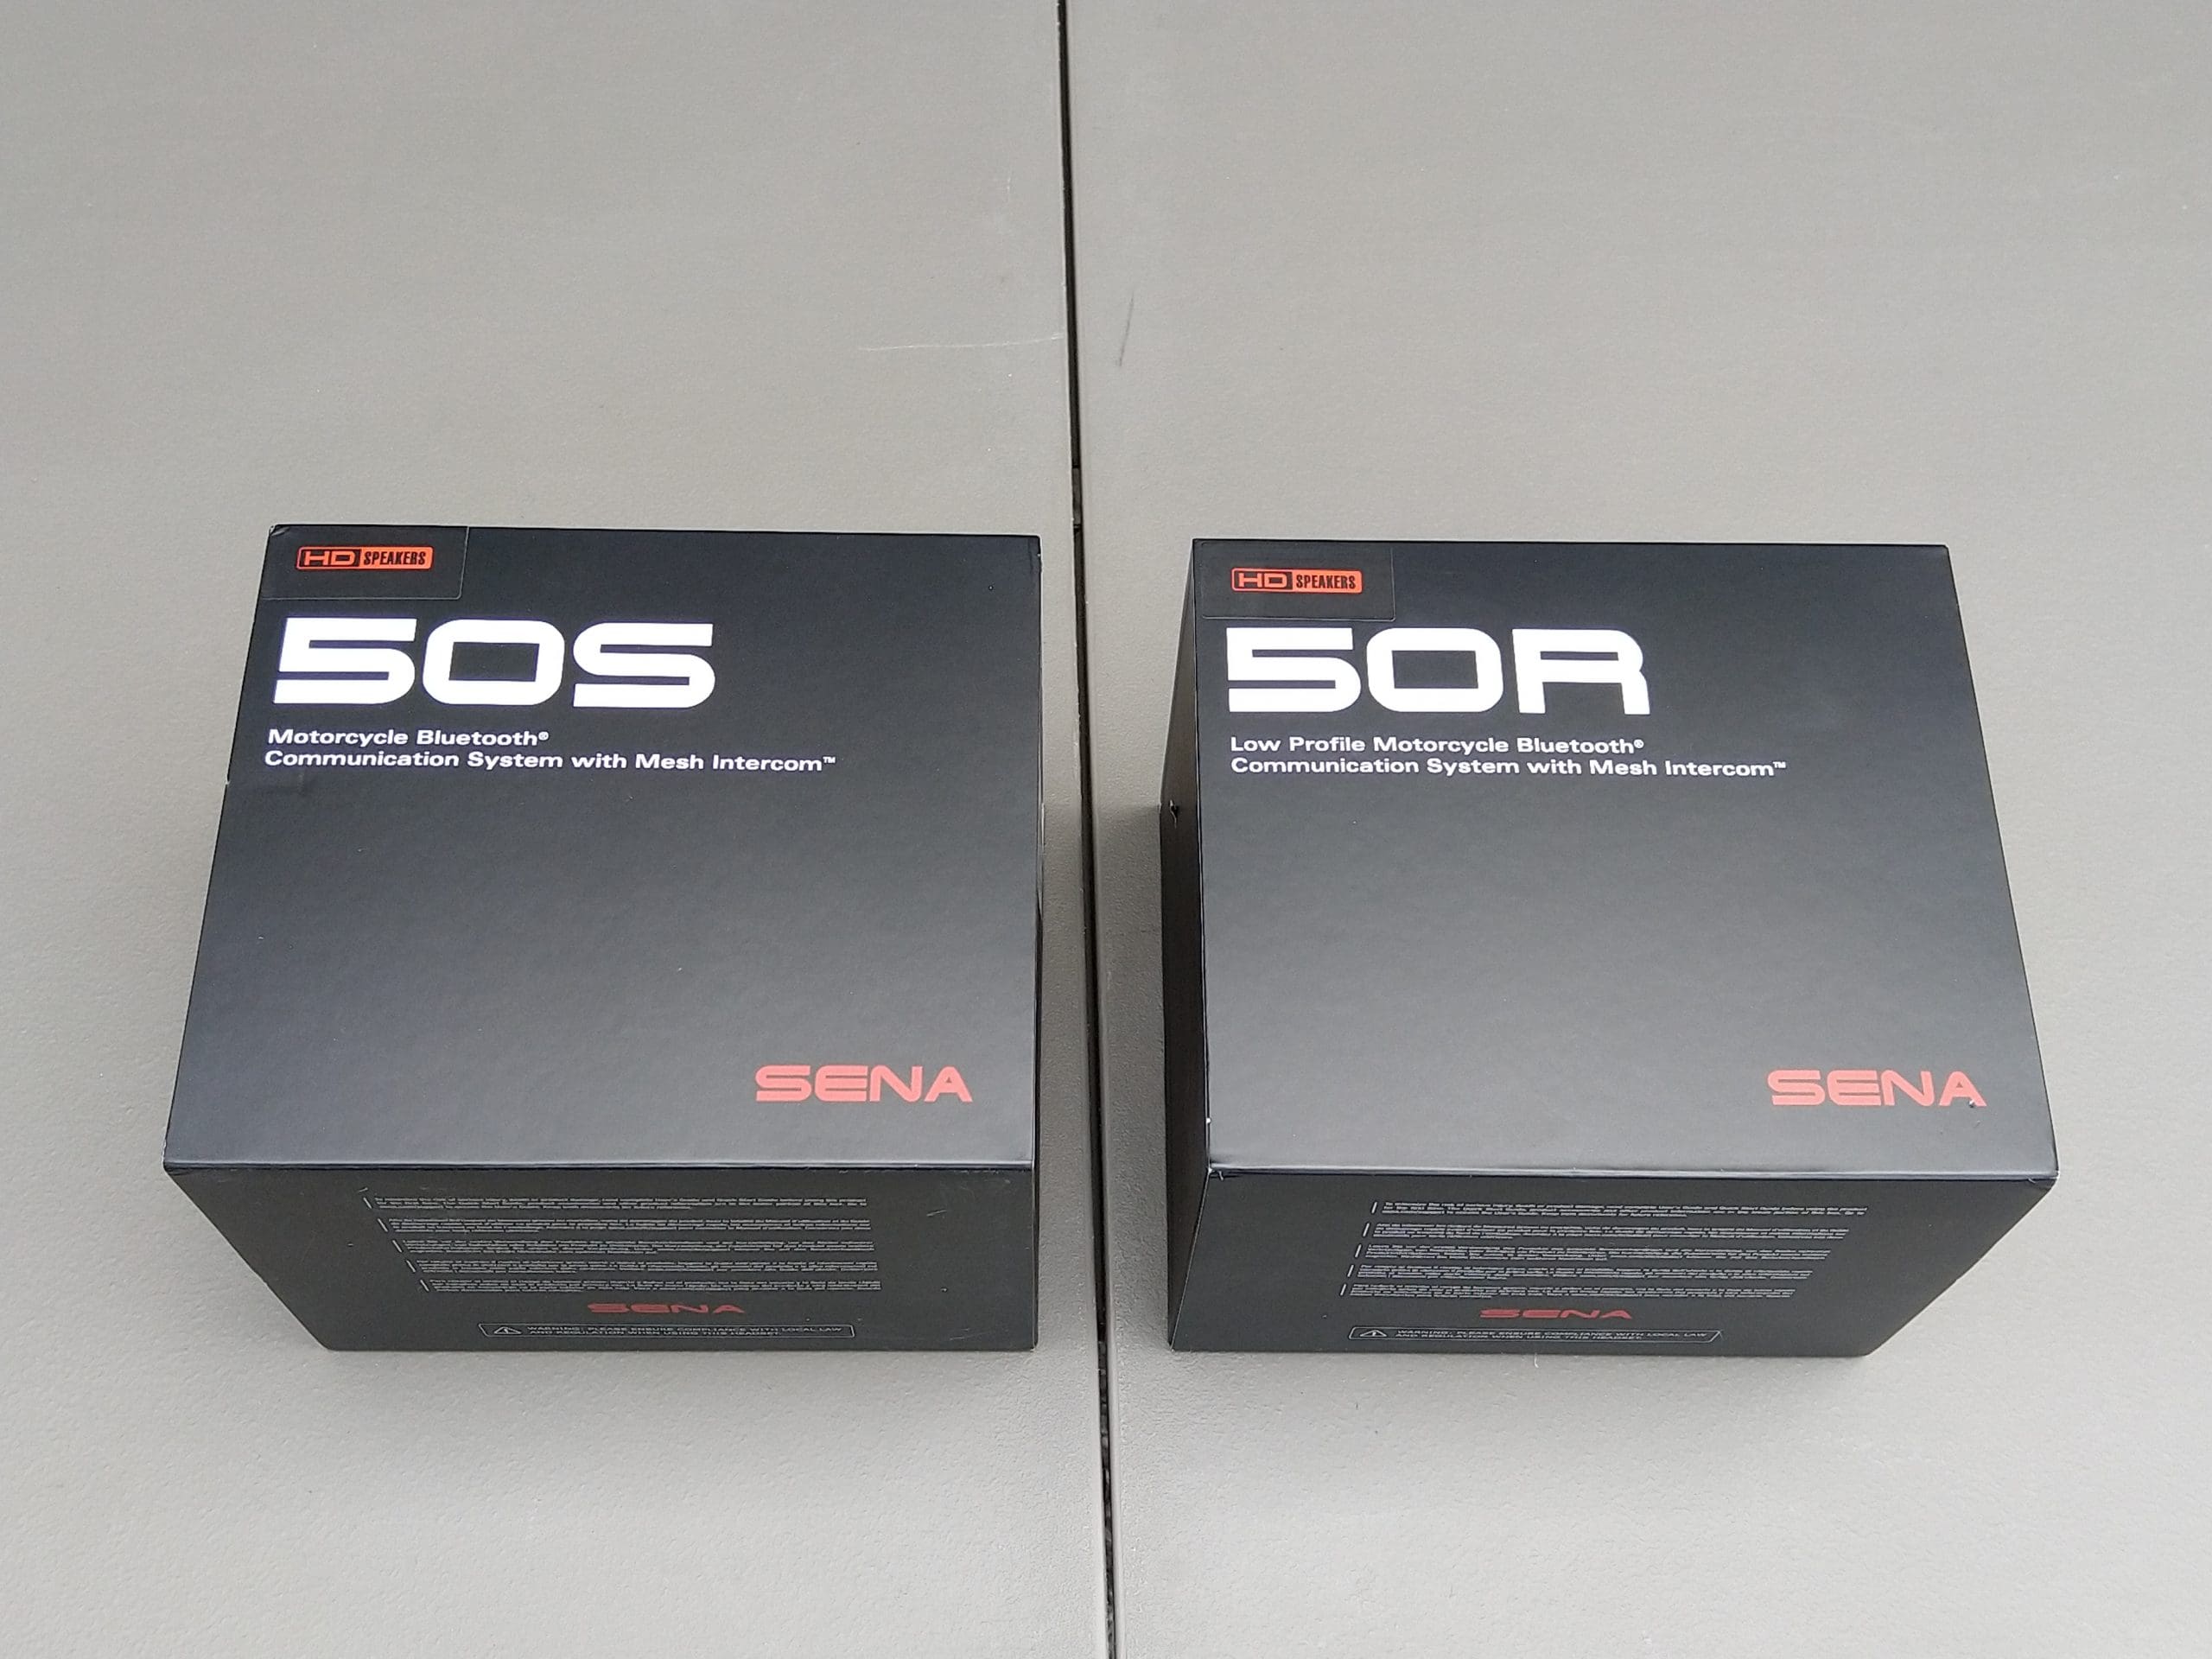 Système de Communication 50R Double - Sena Technologies – ADM Sport